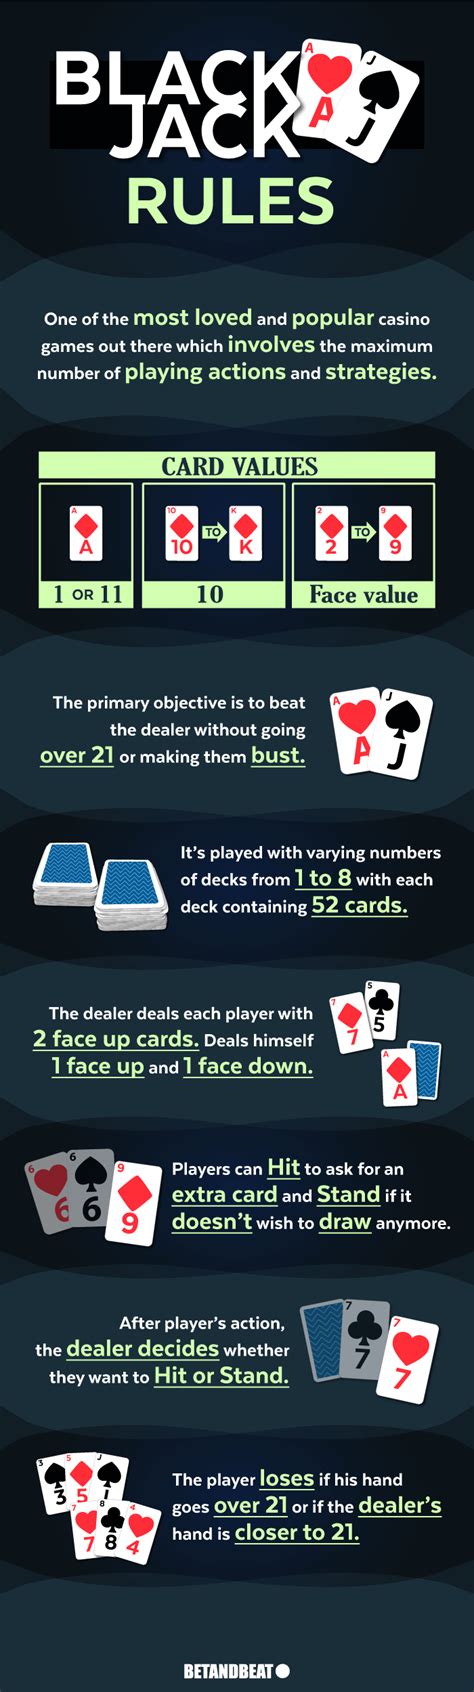 blackjack rules deck of cards france